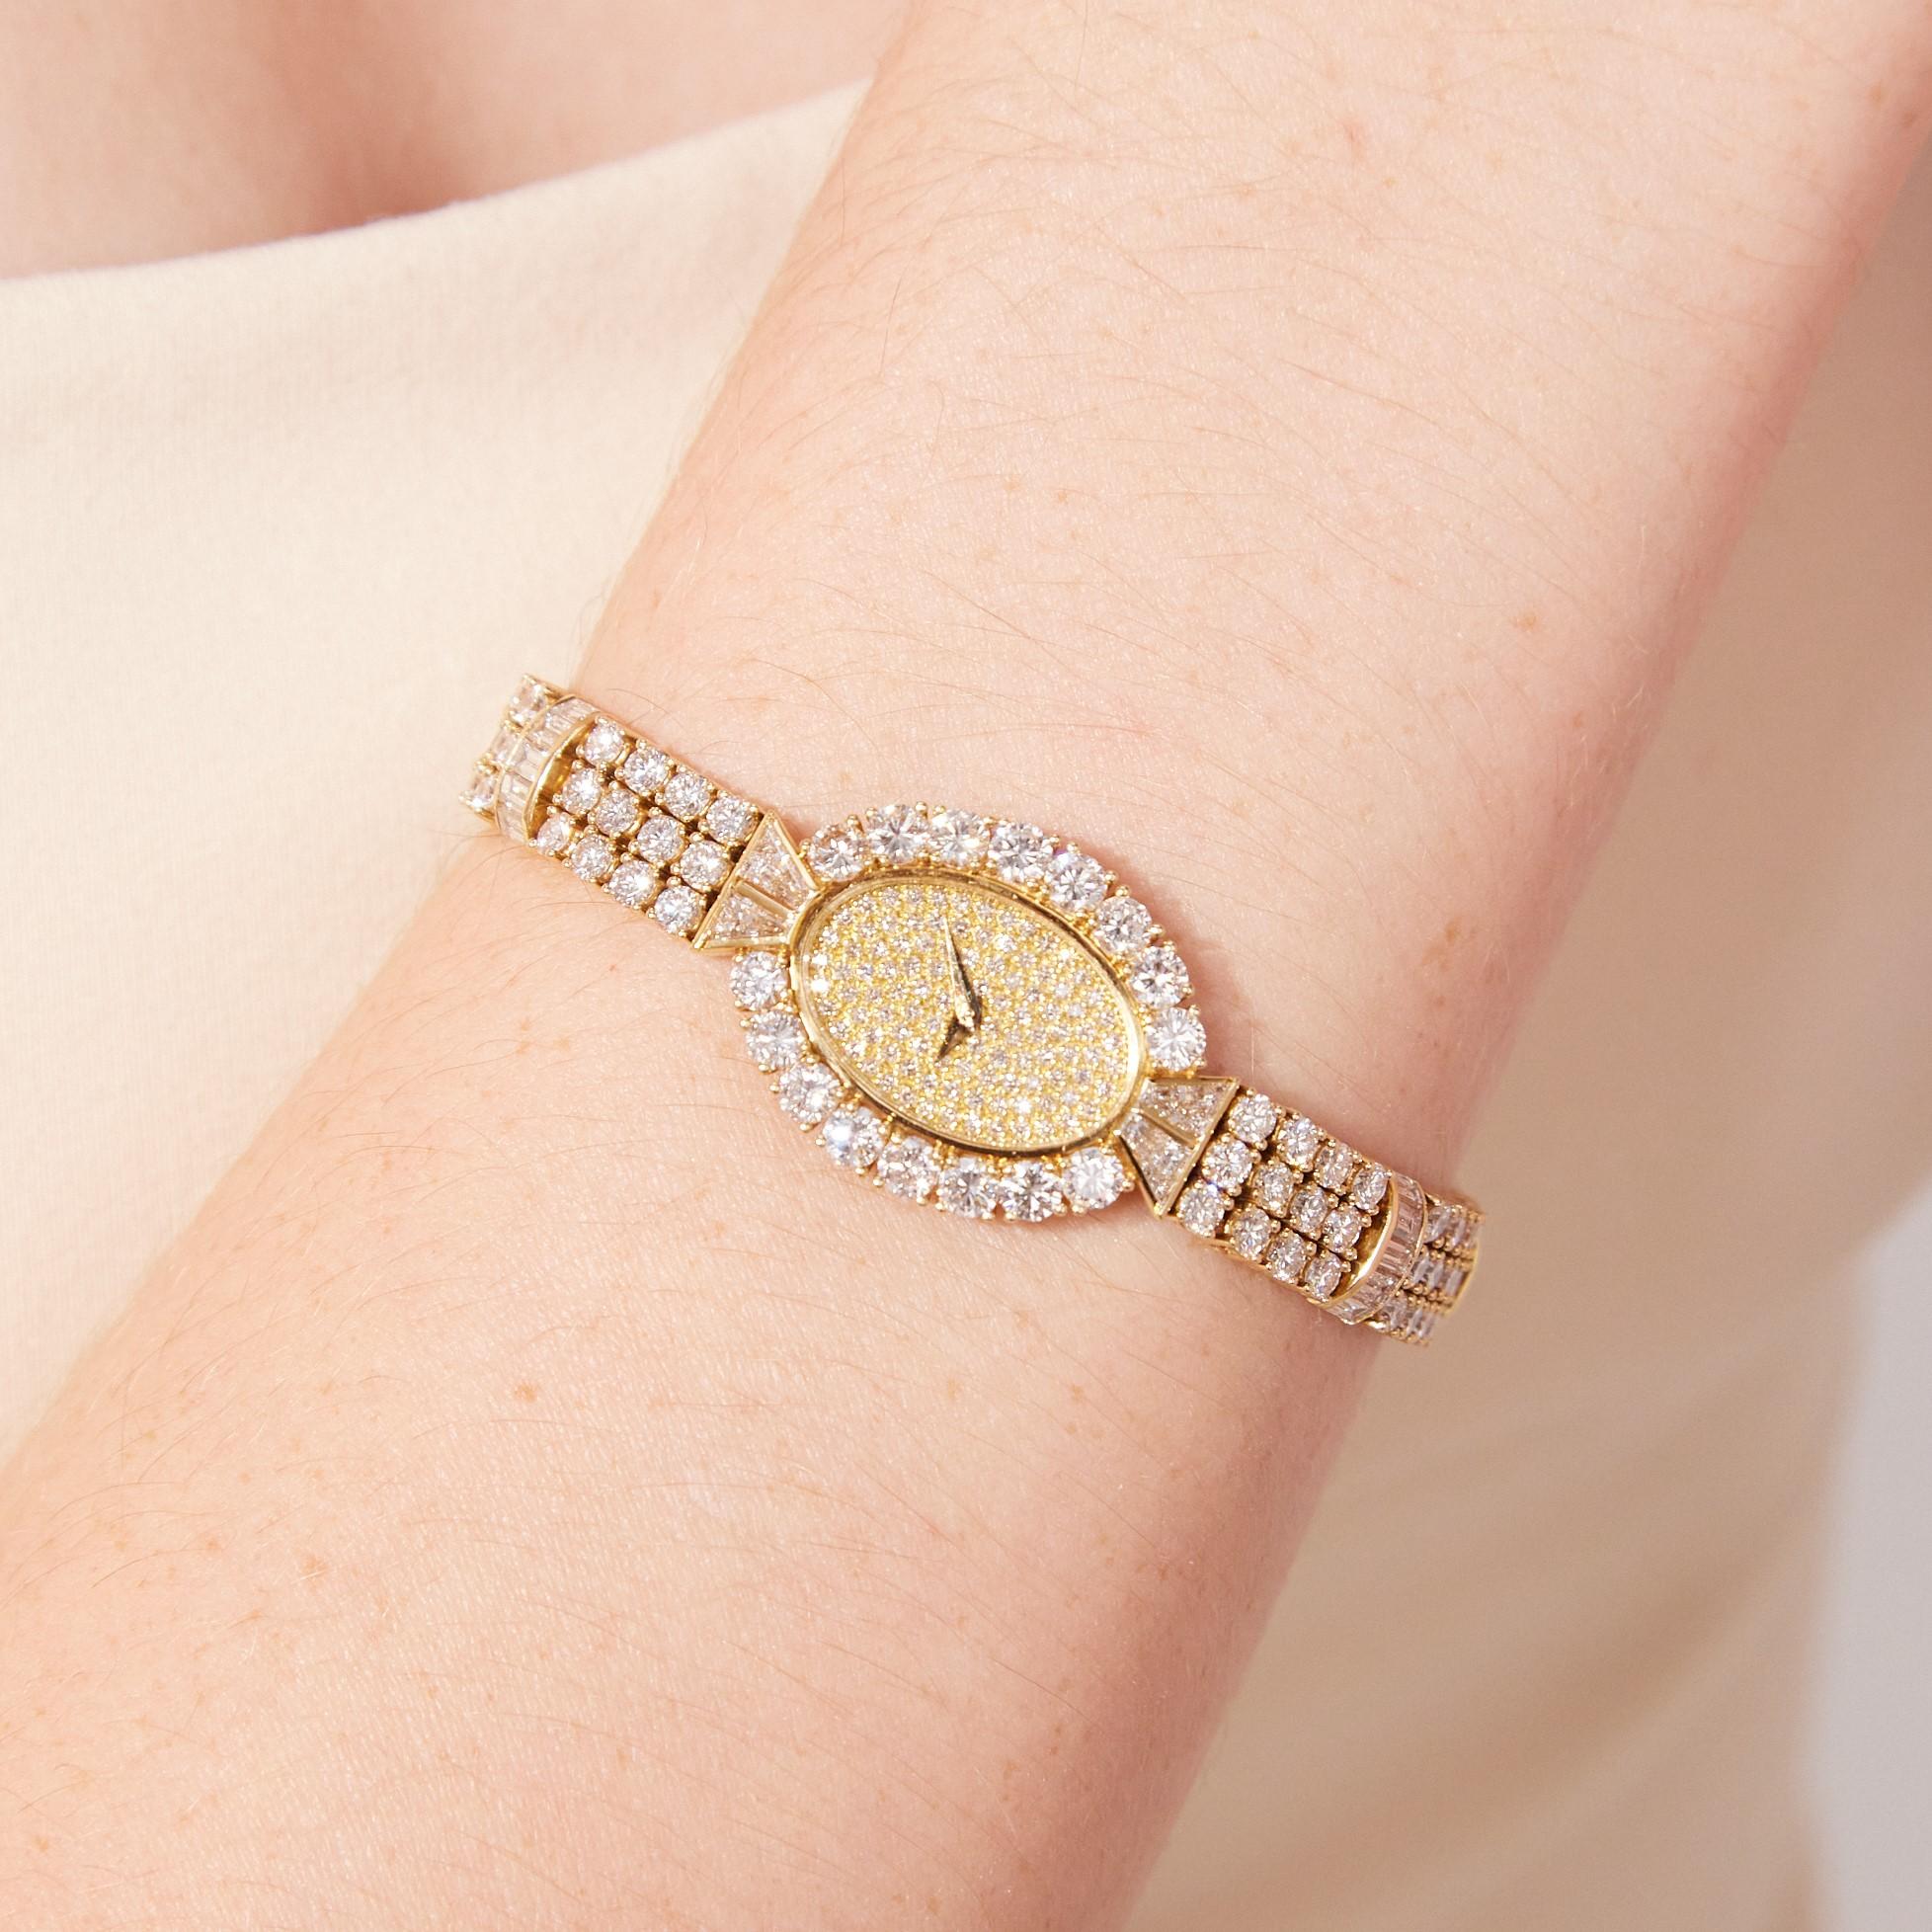 La superbe montre-bracelet Vacheron Constantin Geneve pour dame avec diamants est une pièce très fine et rare de la plus ancienne et de l'une des plus estimées manufactures horlogères de Suisse. La montre présente environ 14 carats de diamants